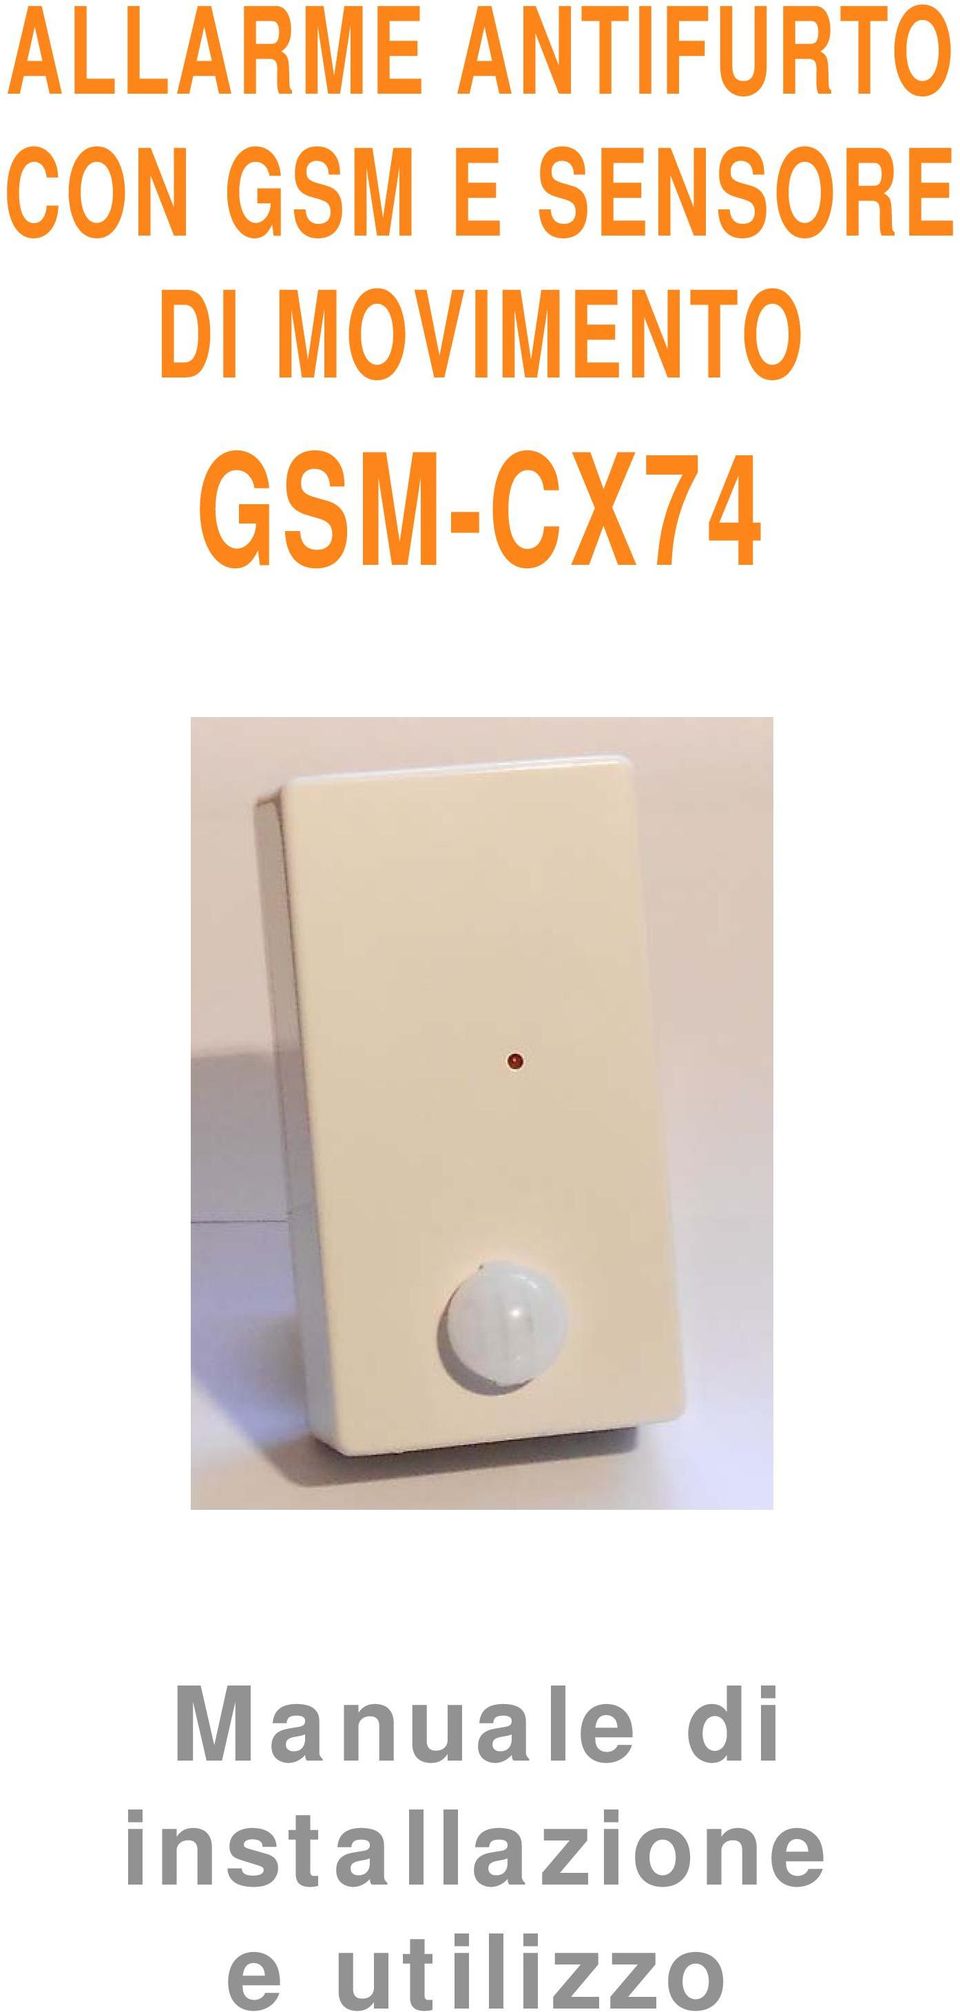 MOVIMENTO GSM-CX74